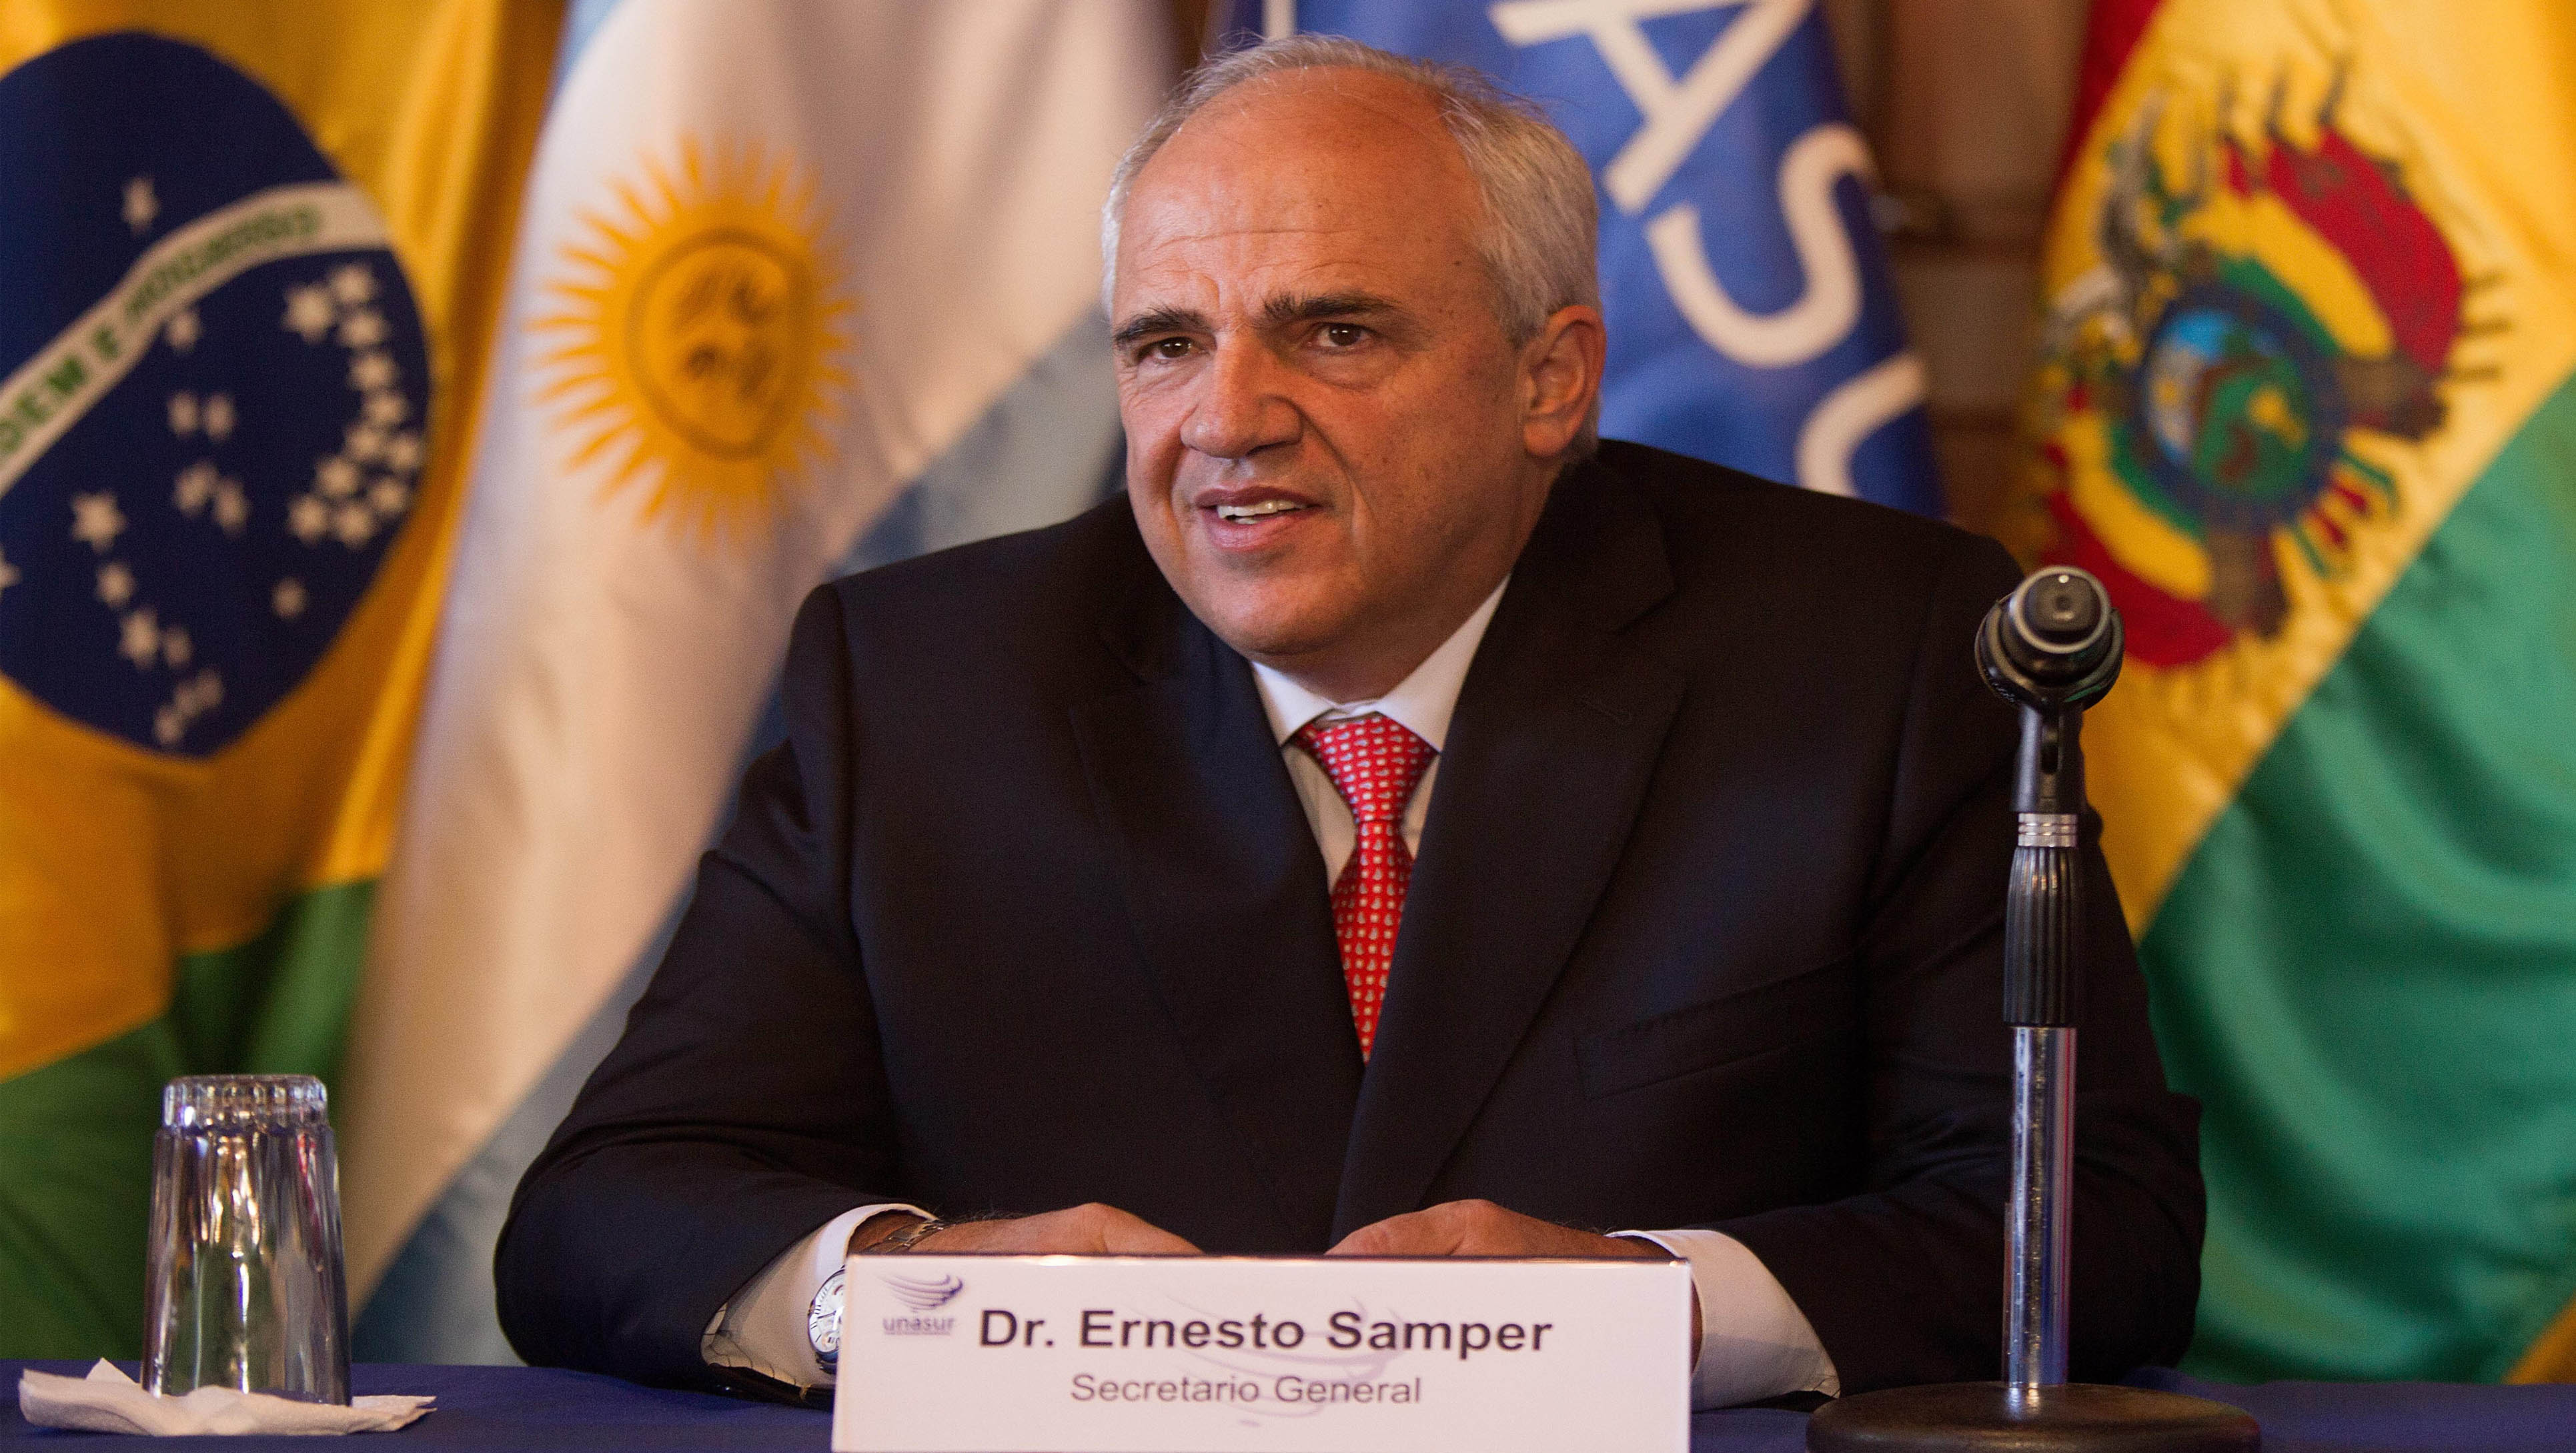 El expresidente colombiano Ernesto Samper ocupará por dos años consecutivos el cargo de Secretario General de la Unasur. (Foto: EFE)